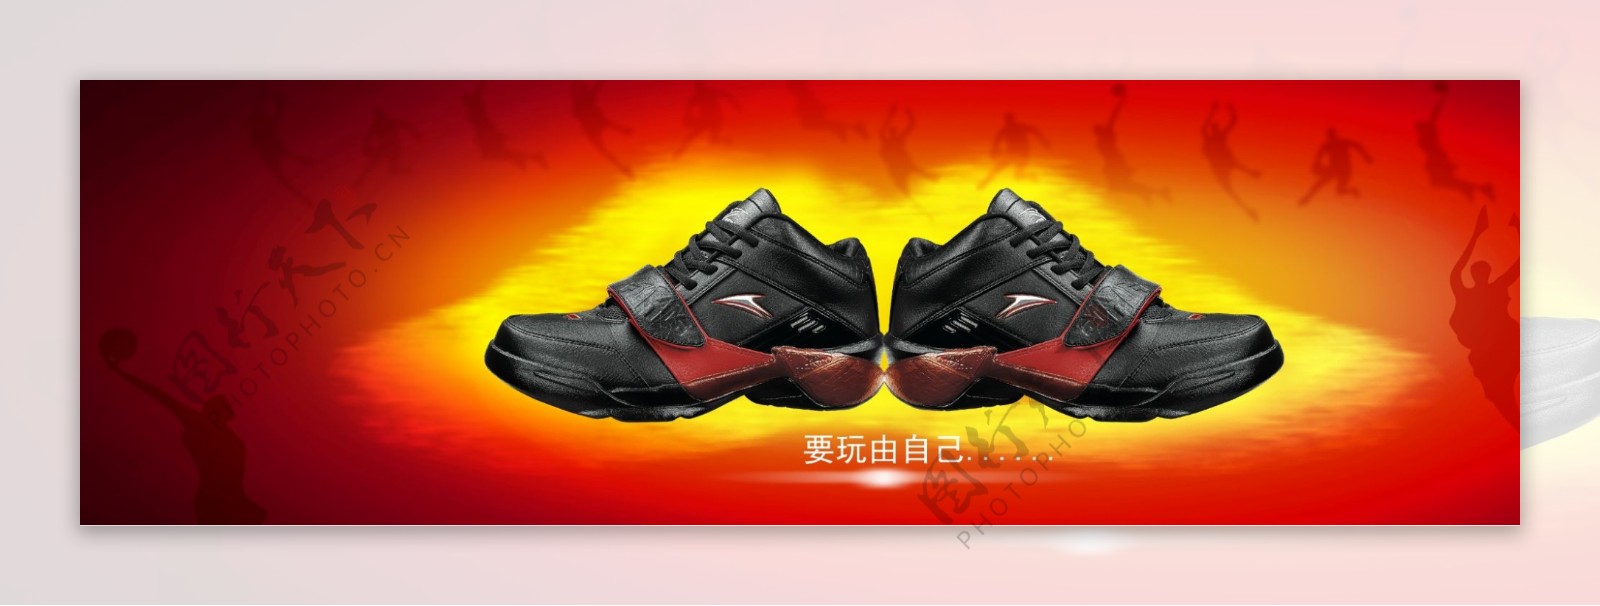 运动鞋广告设计图片